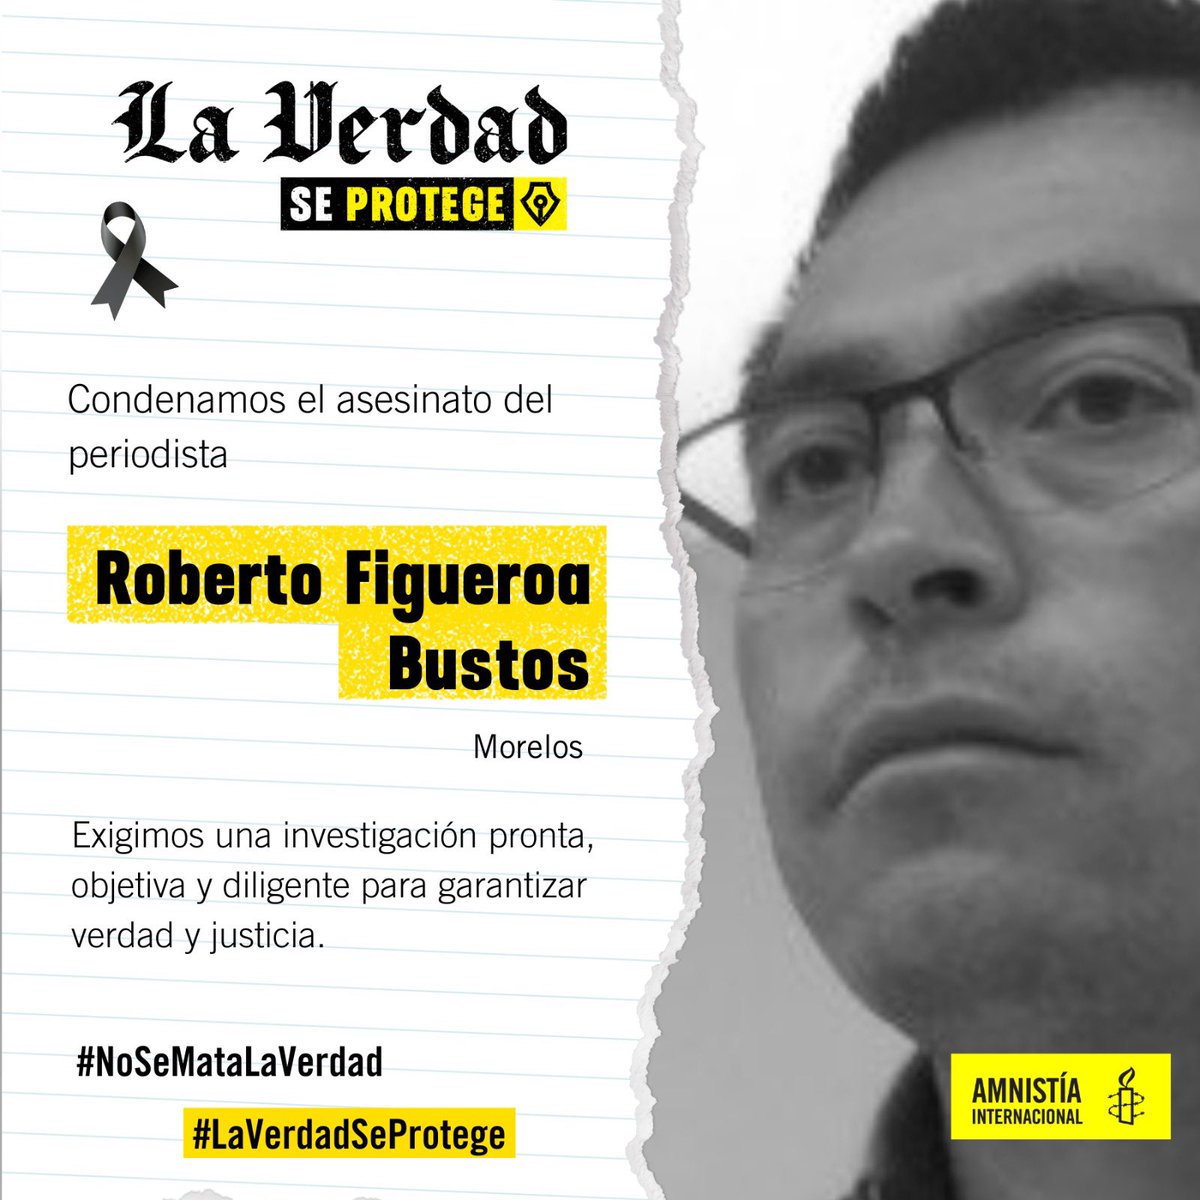 🚨Condenamos el asesinato del periodista Roberto Figueroa Bustos, productor y conductor de “Acá en el Show” en #Morelos.

📢Exigimos a @Fiscalia_Mor una investigación pronta, objetiva y diligente para garantizar #VerdadYJusticia.

#NoSeMataLaVerdad
#LaVerdadSeProtege